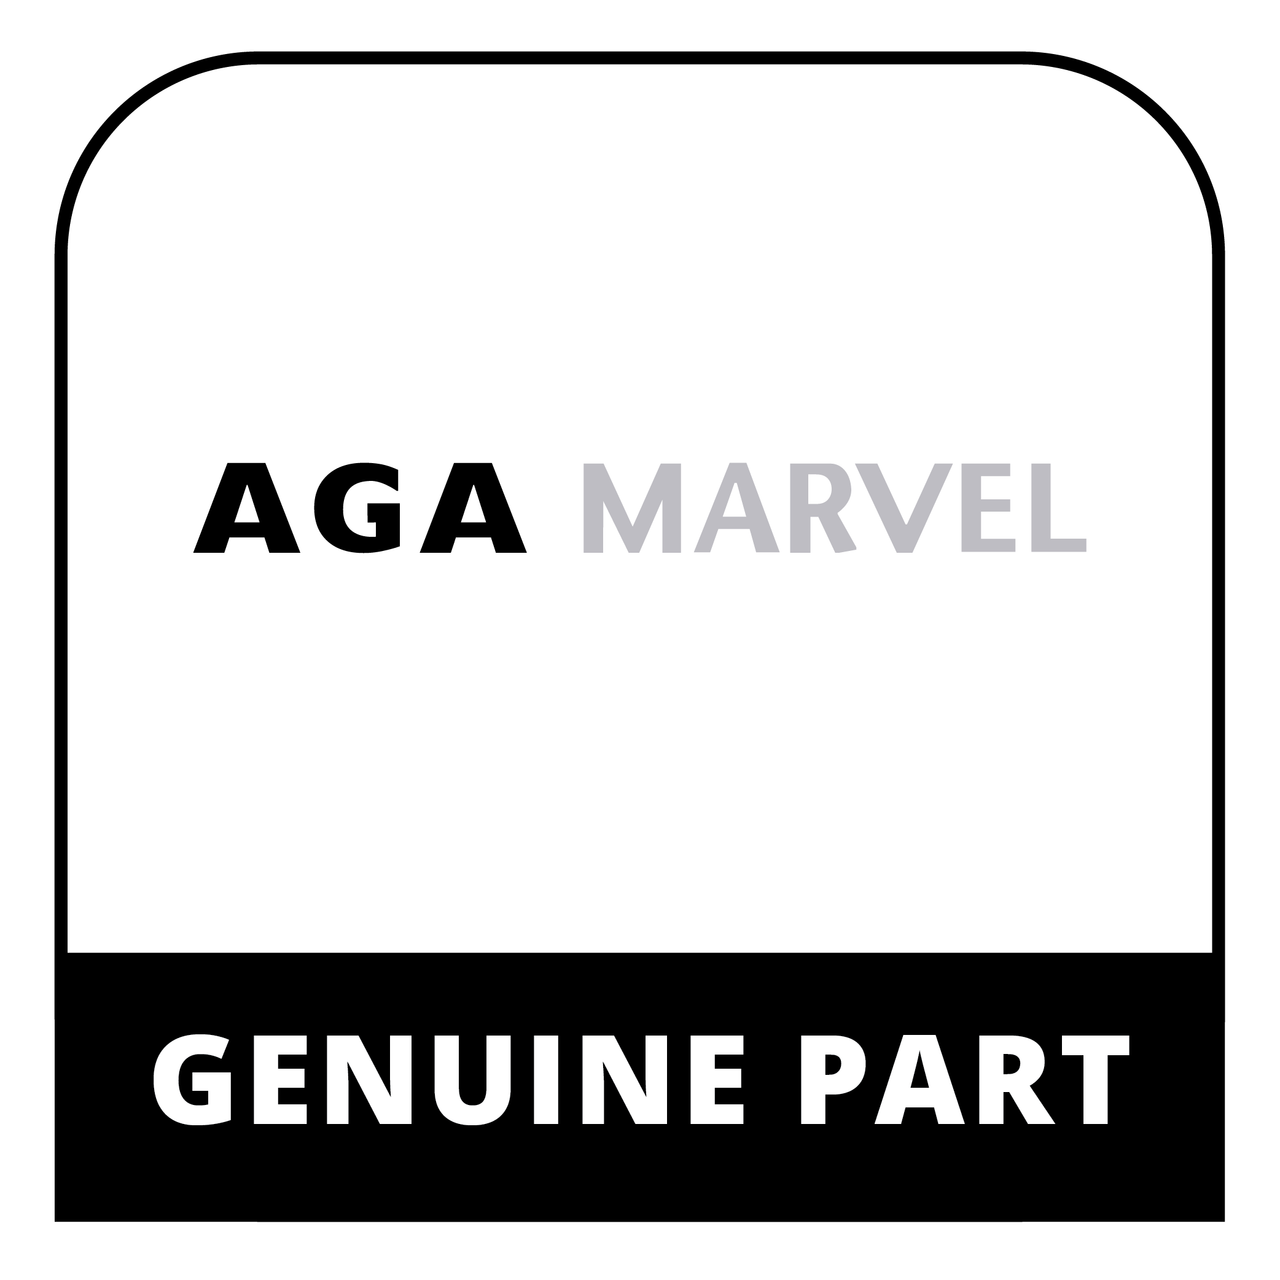 AGA Marvel RG4M997510 - Packing Cooker Burner - Ray 480Cd - Genuine AGA Marvel Part